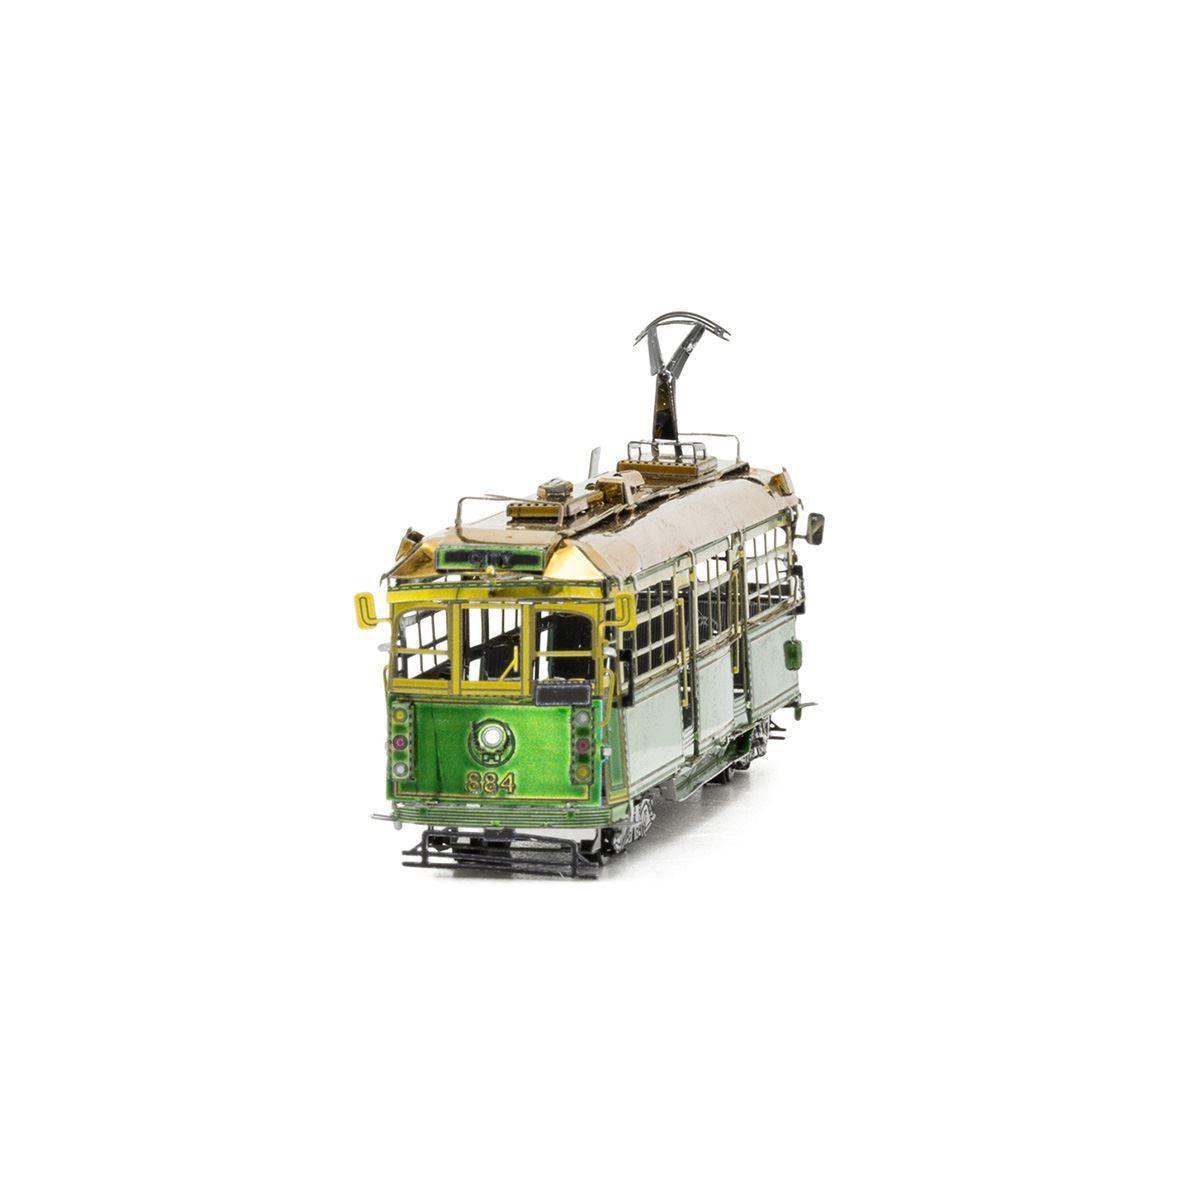 Melbourne W-Class Tram 3D Steel Model Kit Metal Earth